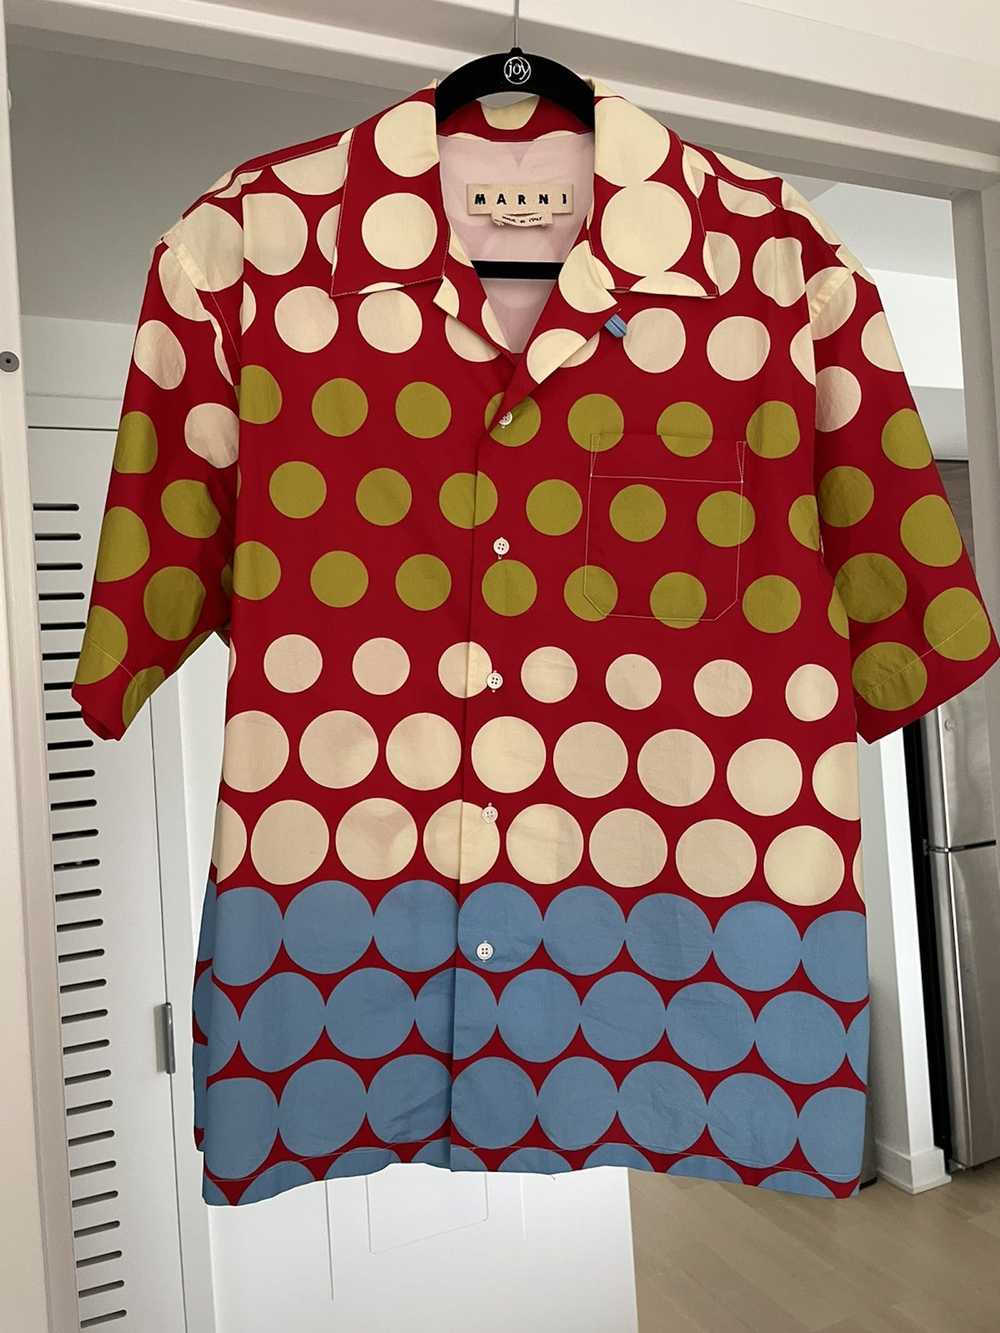 Marni Marni polka dot button up shirt - image 1